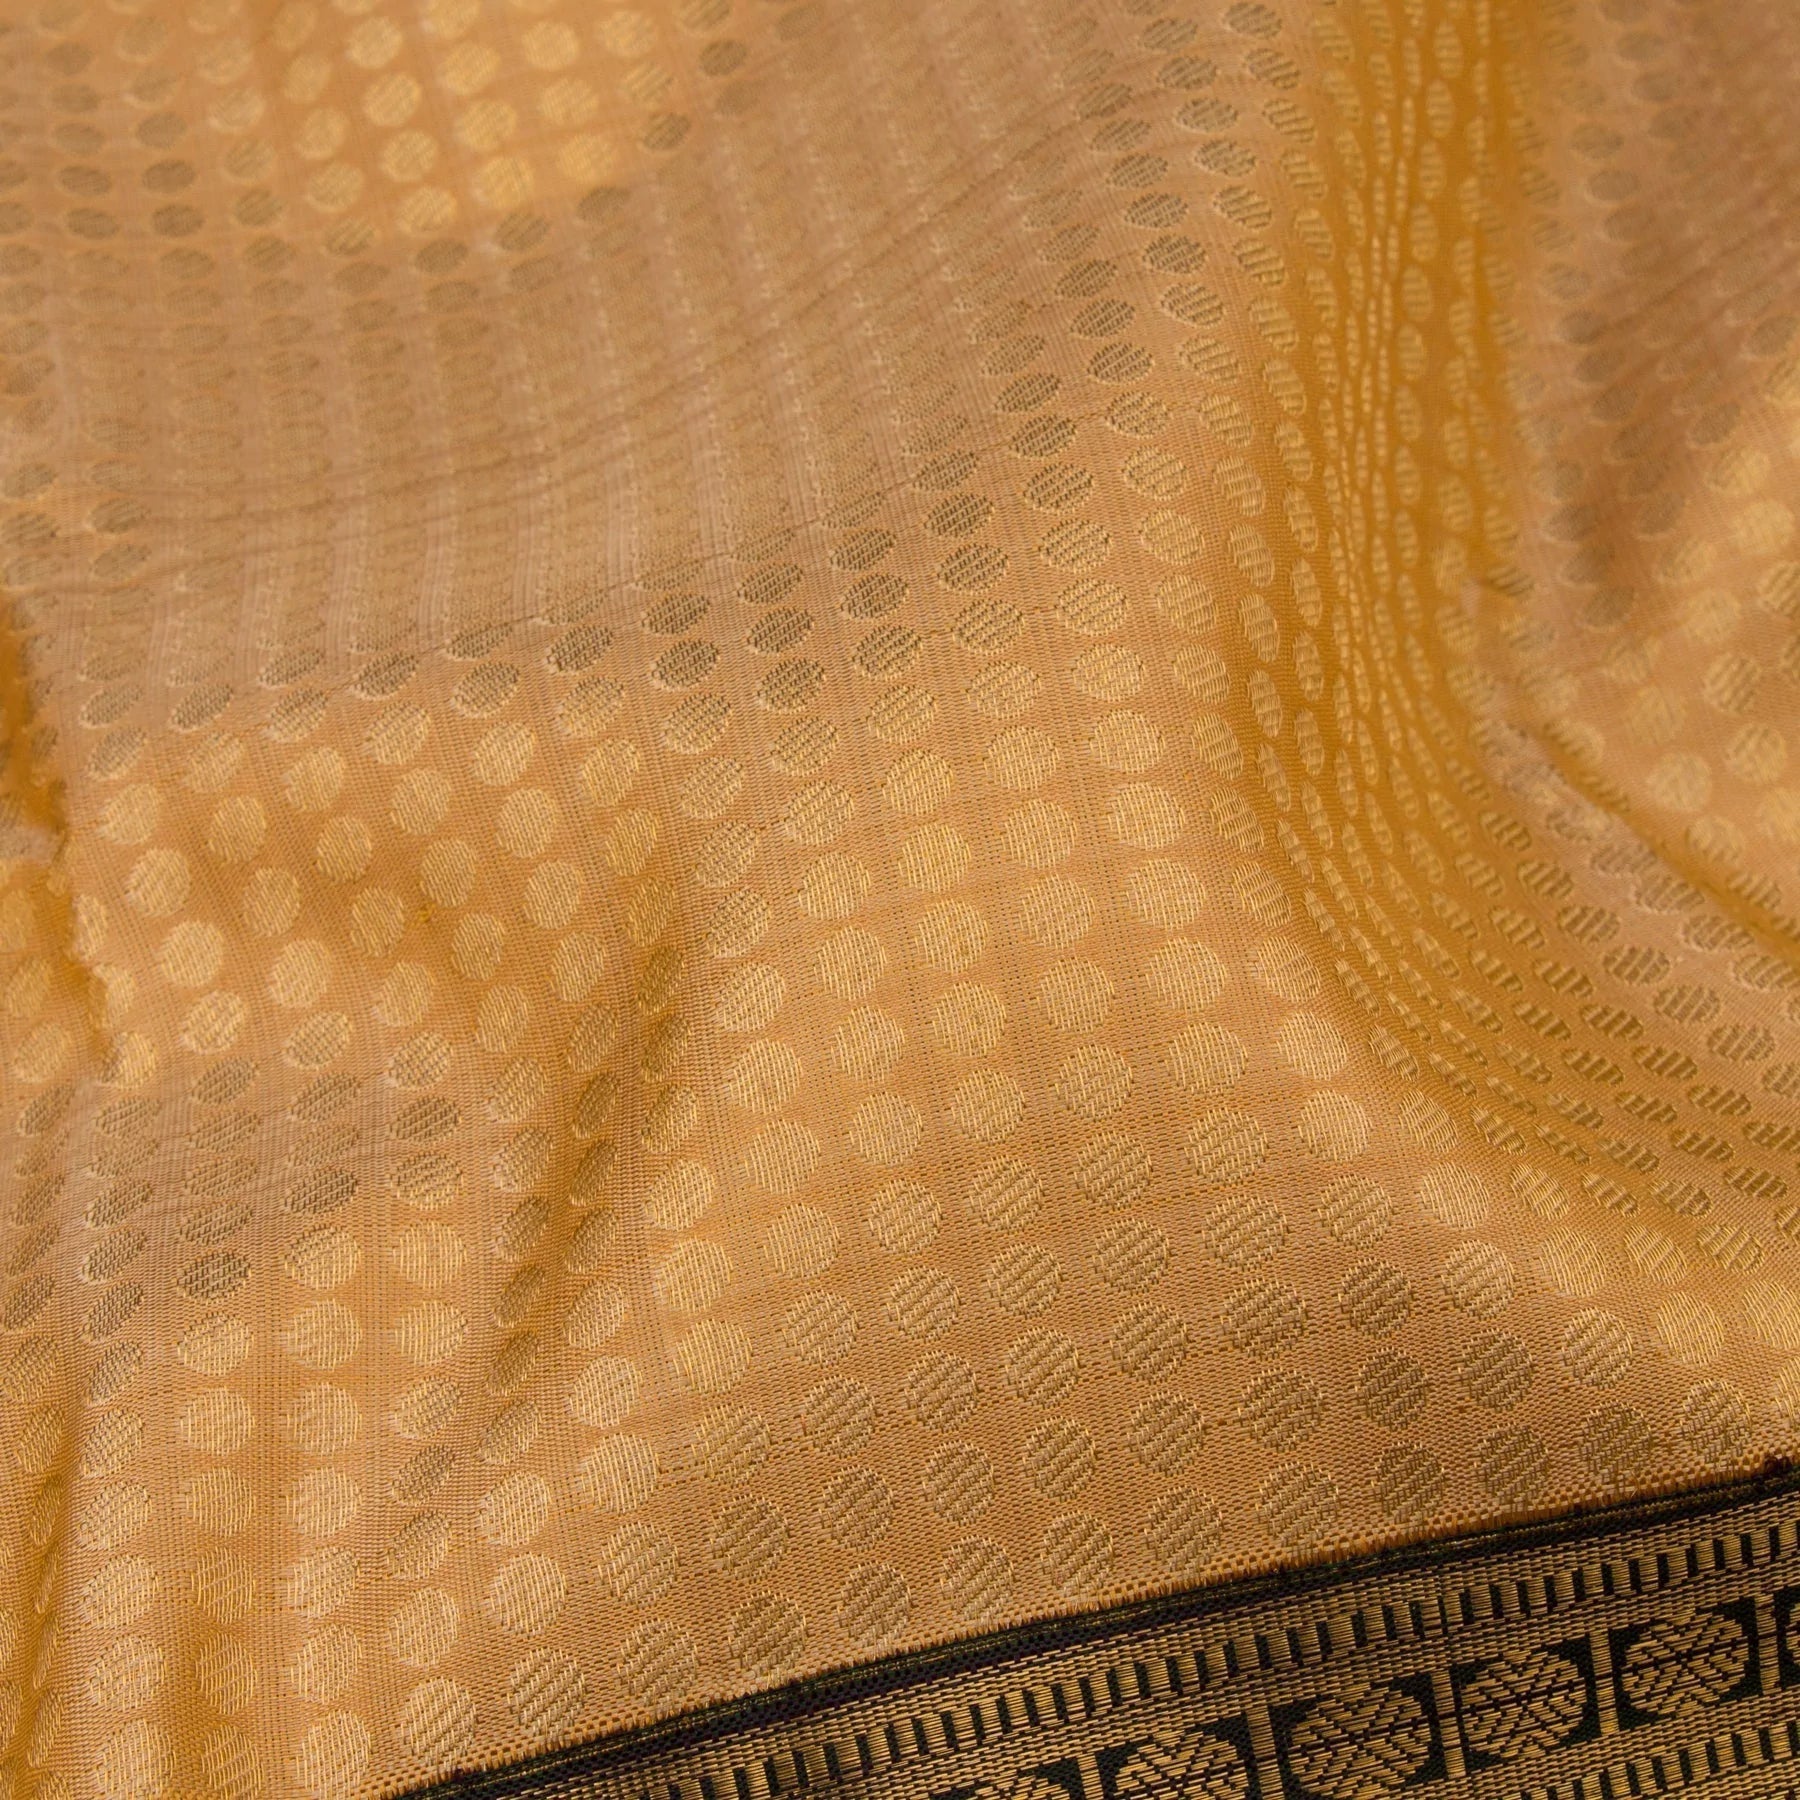 Kanakavalli Kanjivaram Silk Sari 21-110-HS001-07014 - Fabric View